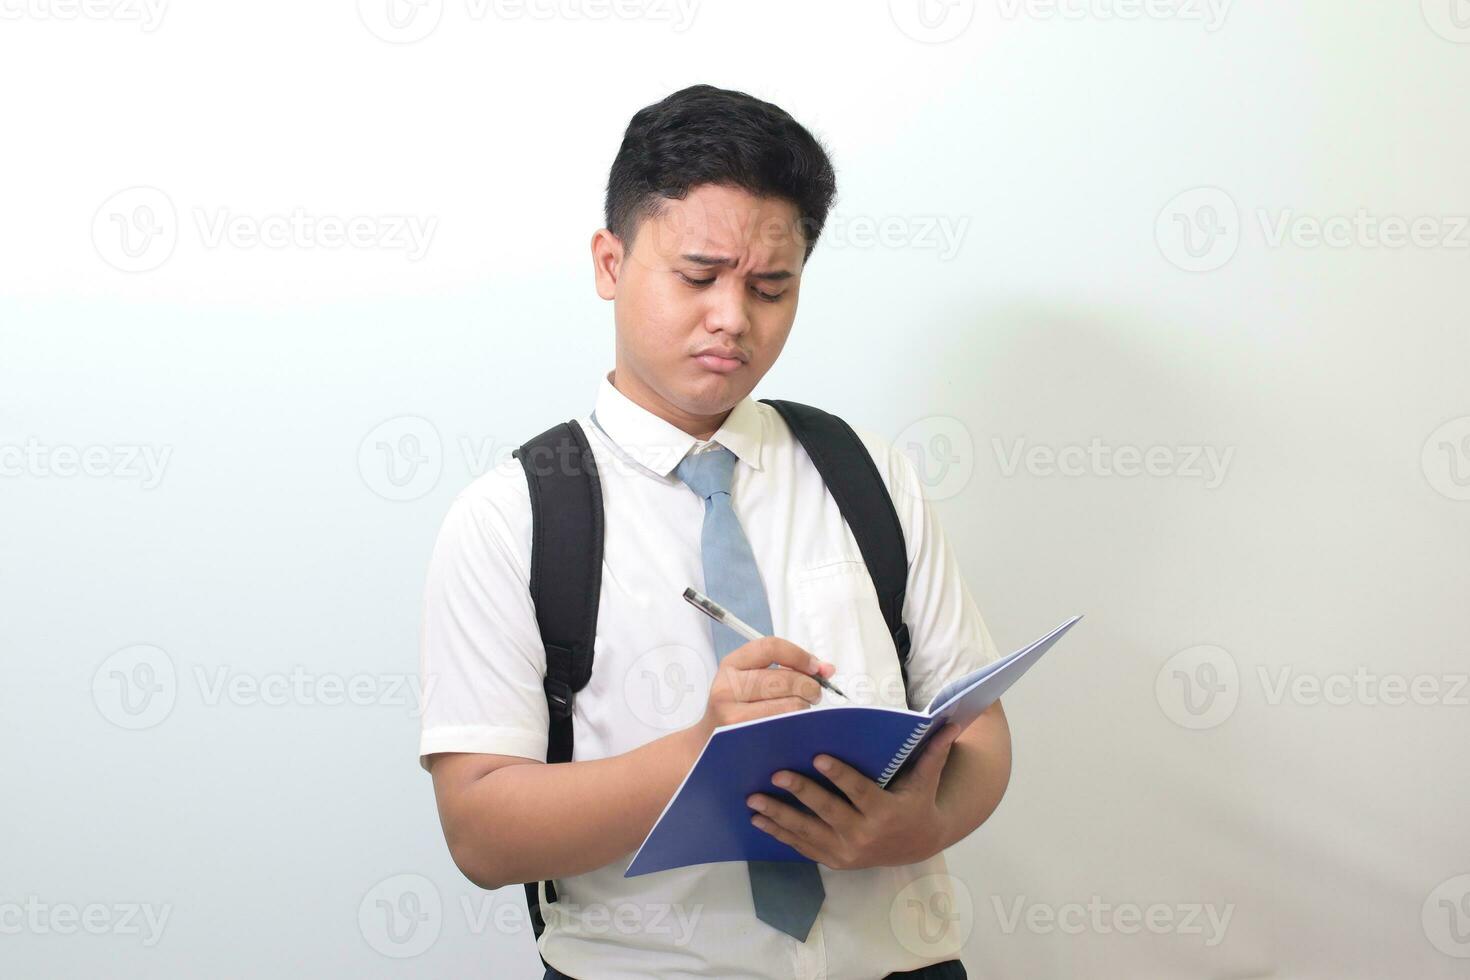 indonésio Senior Alto escola aluna vestindo branco camisa uniforme com cinzento gravata escrevendo em Nota livro usando caneta com irritado e frustrado expressão. isolado imagem em branco fundo foto